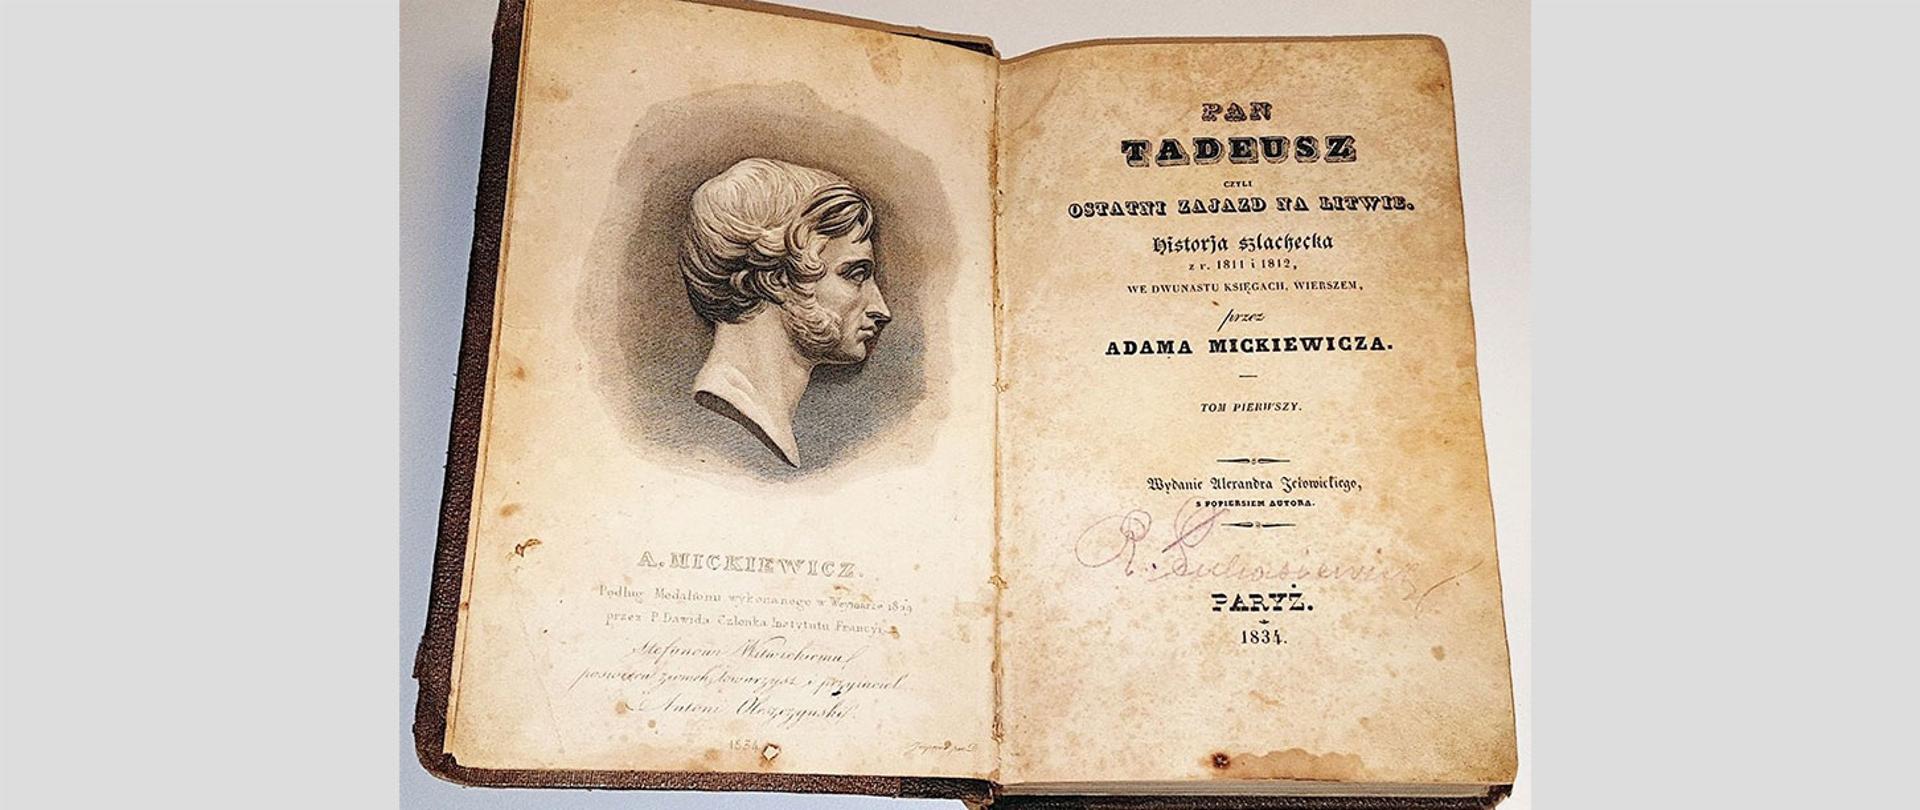 Zdjęcie przedstawiające zabytkową książę pt. "Pan Tadeusz" z 1834 roku. otwartą na stronie tytułowej